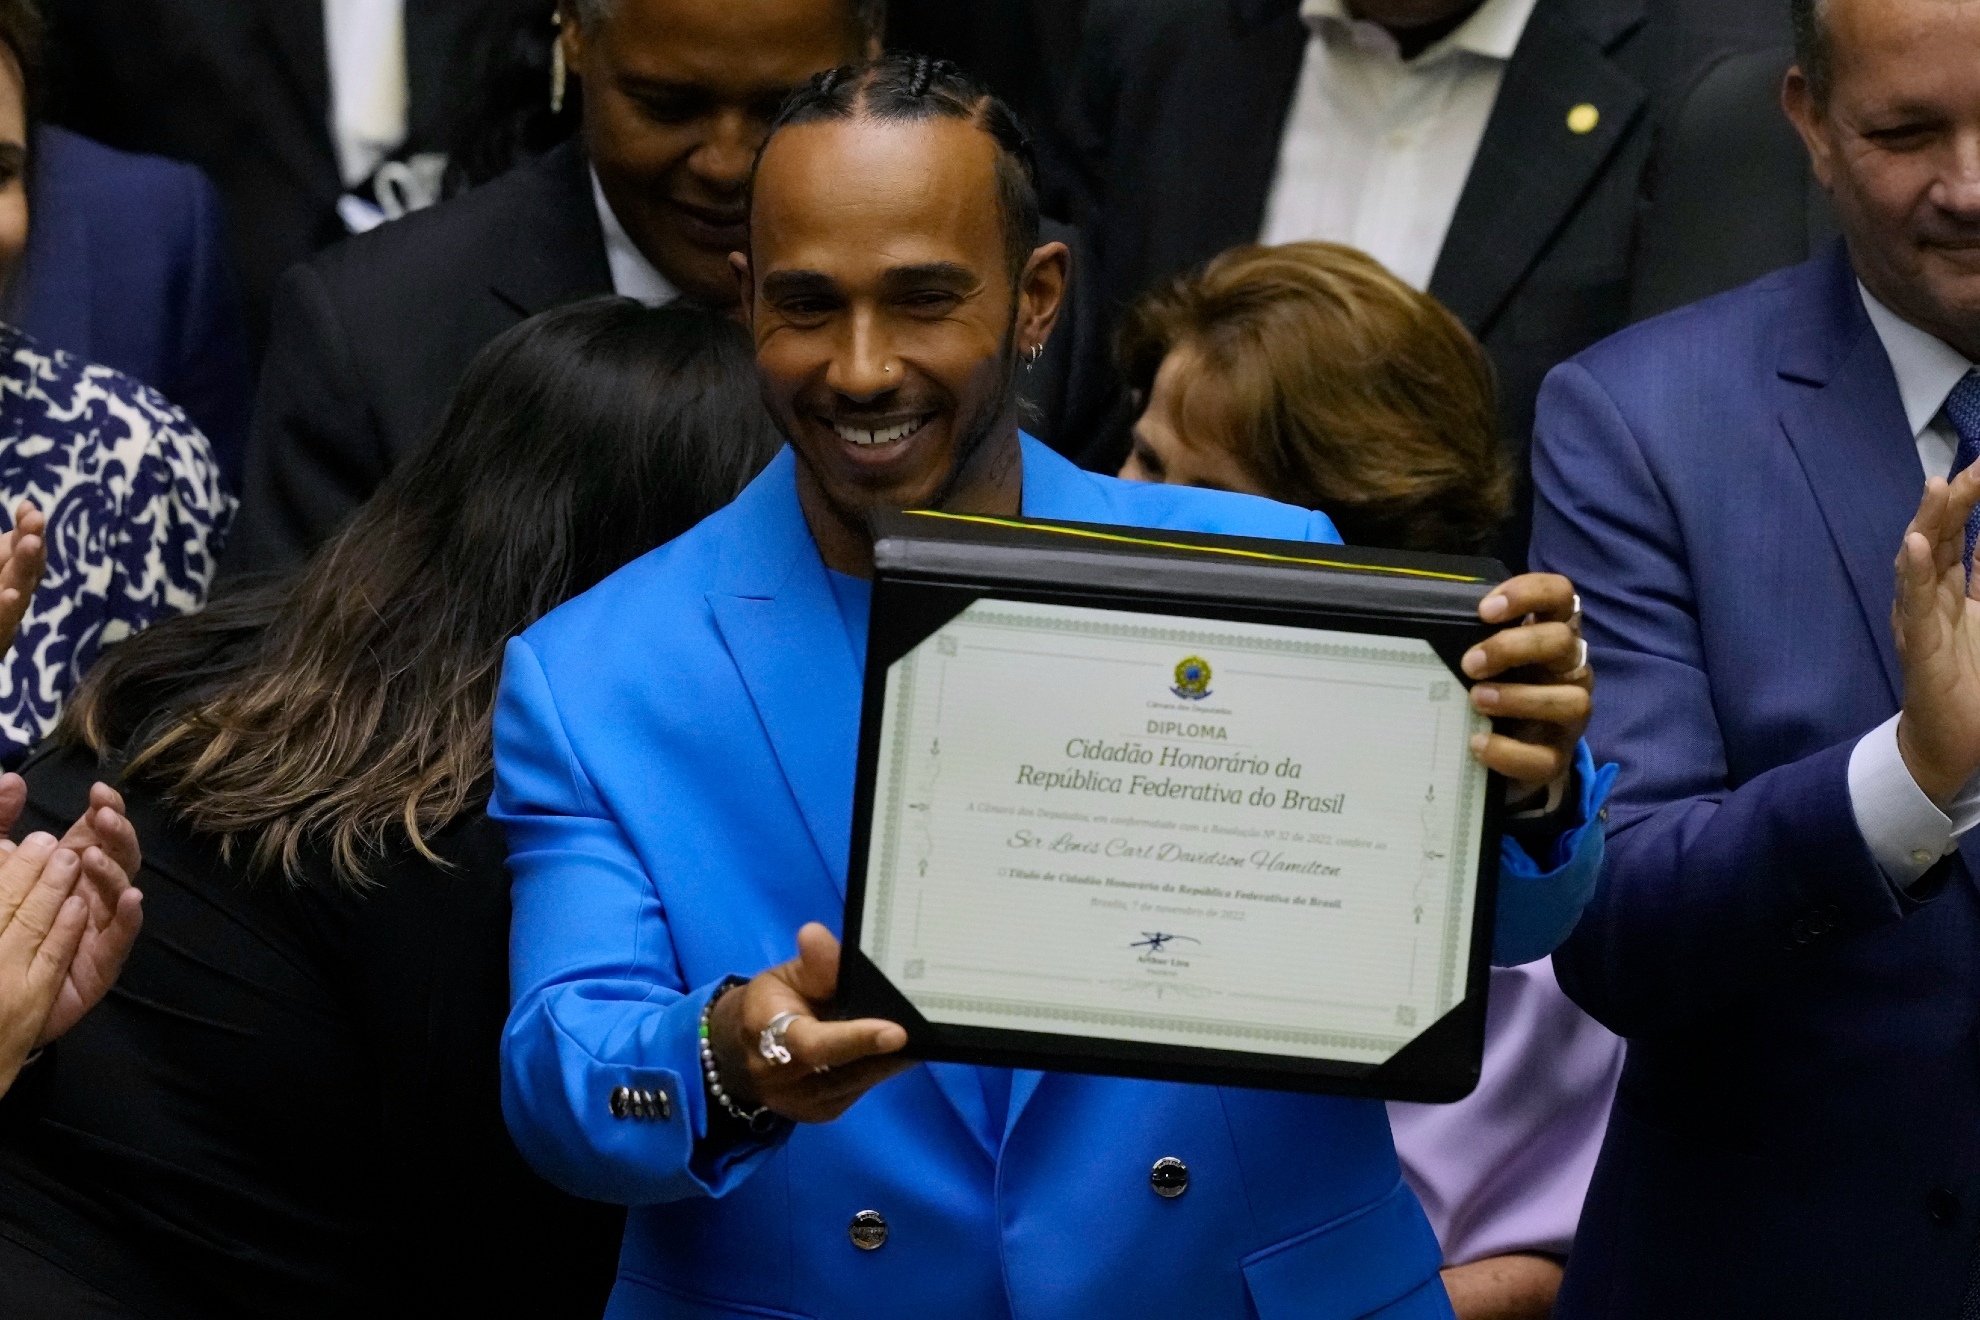 Hamilton muestra su ttulo de ciudadano honorario de Brasil.